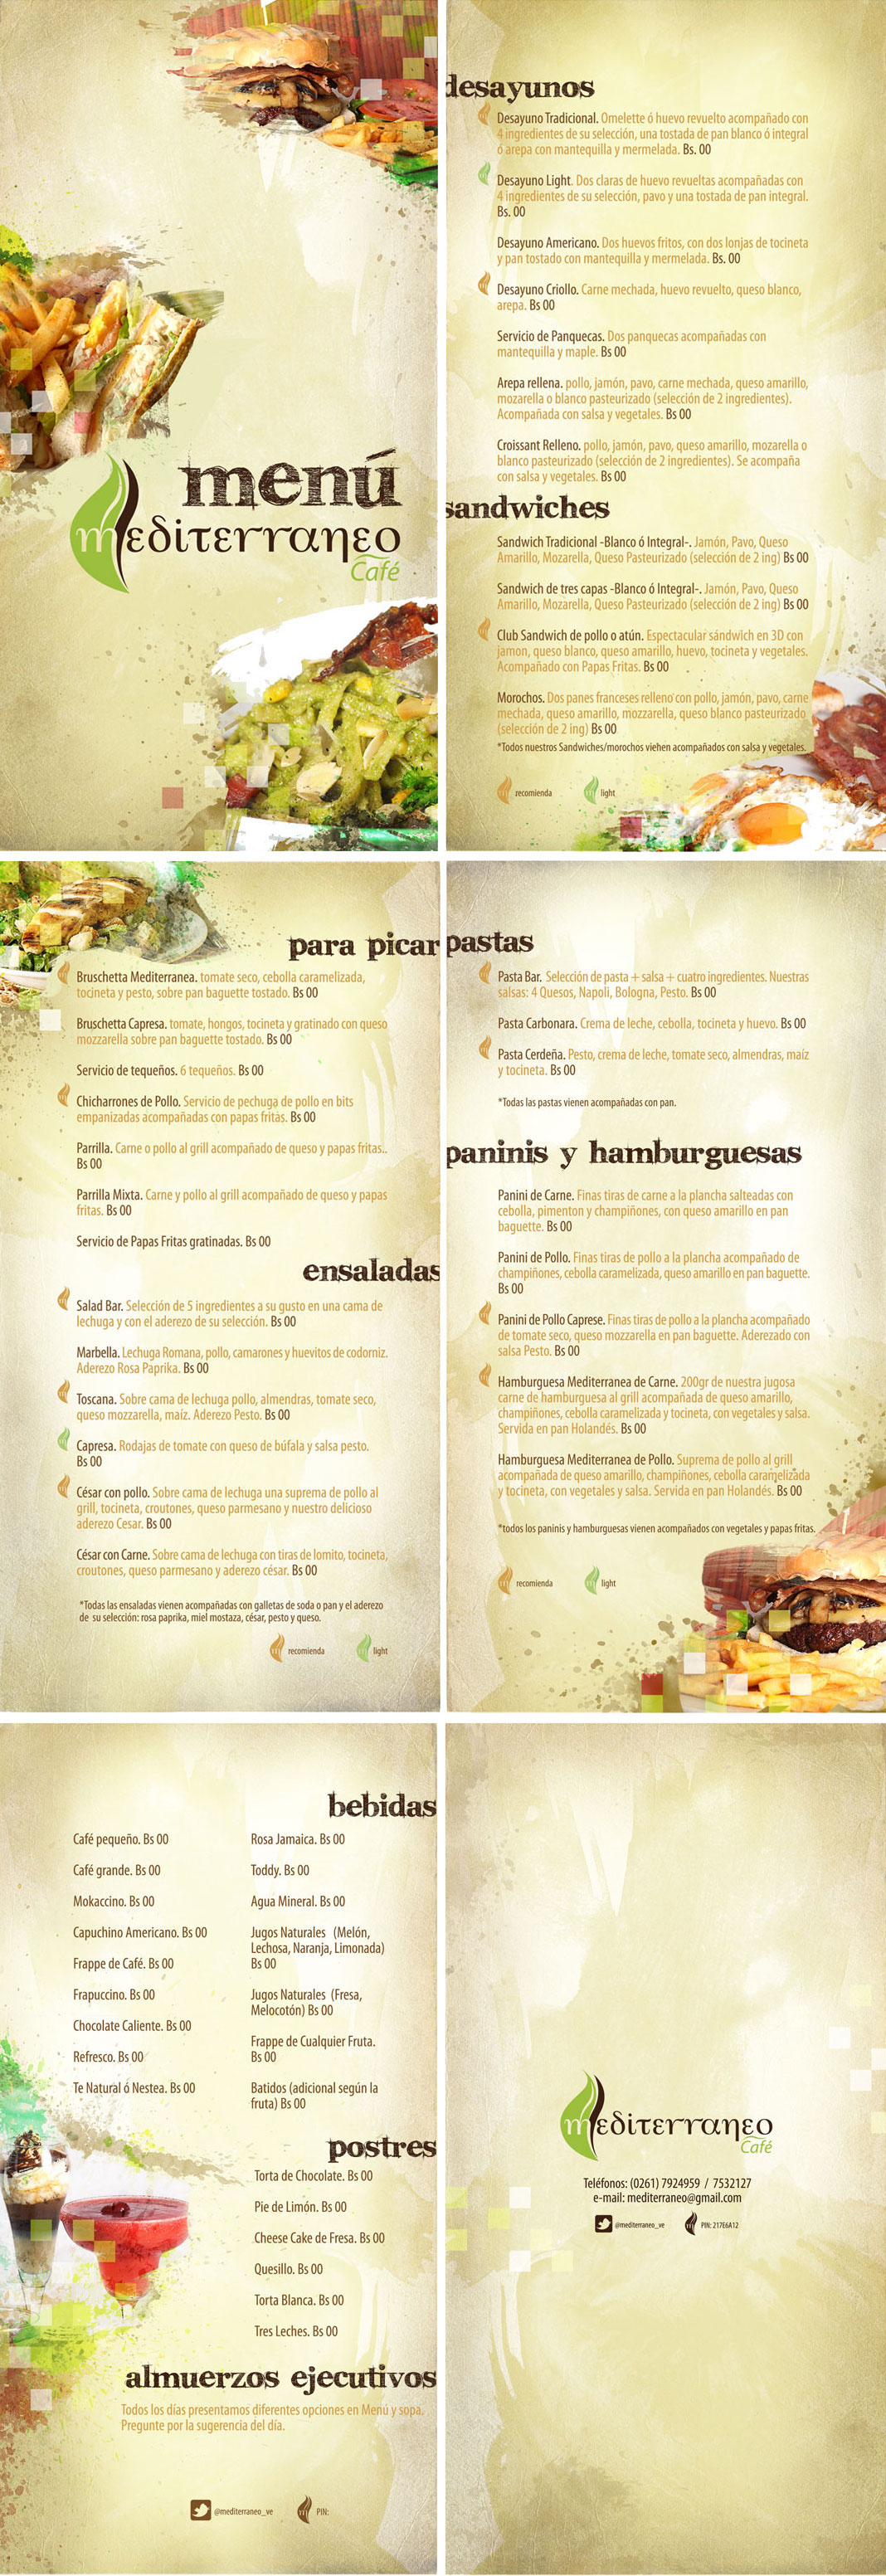 menu  restaurant menus  FOOD Pasta  sandwich